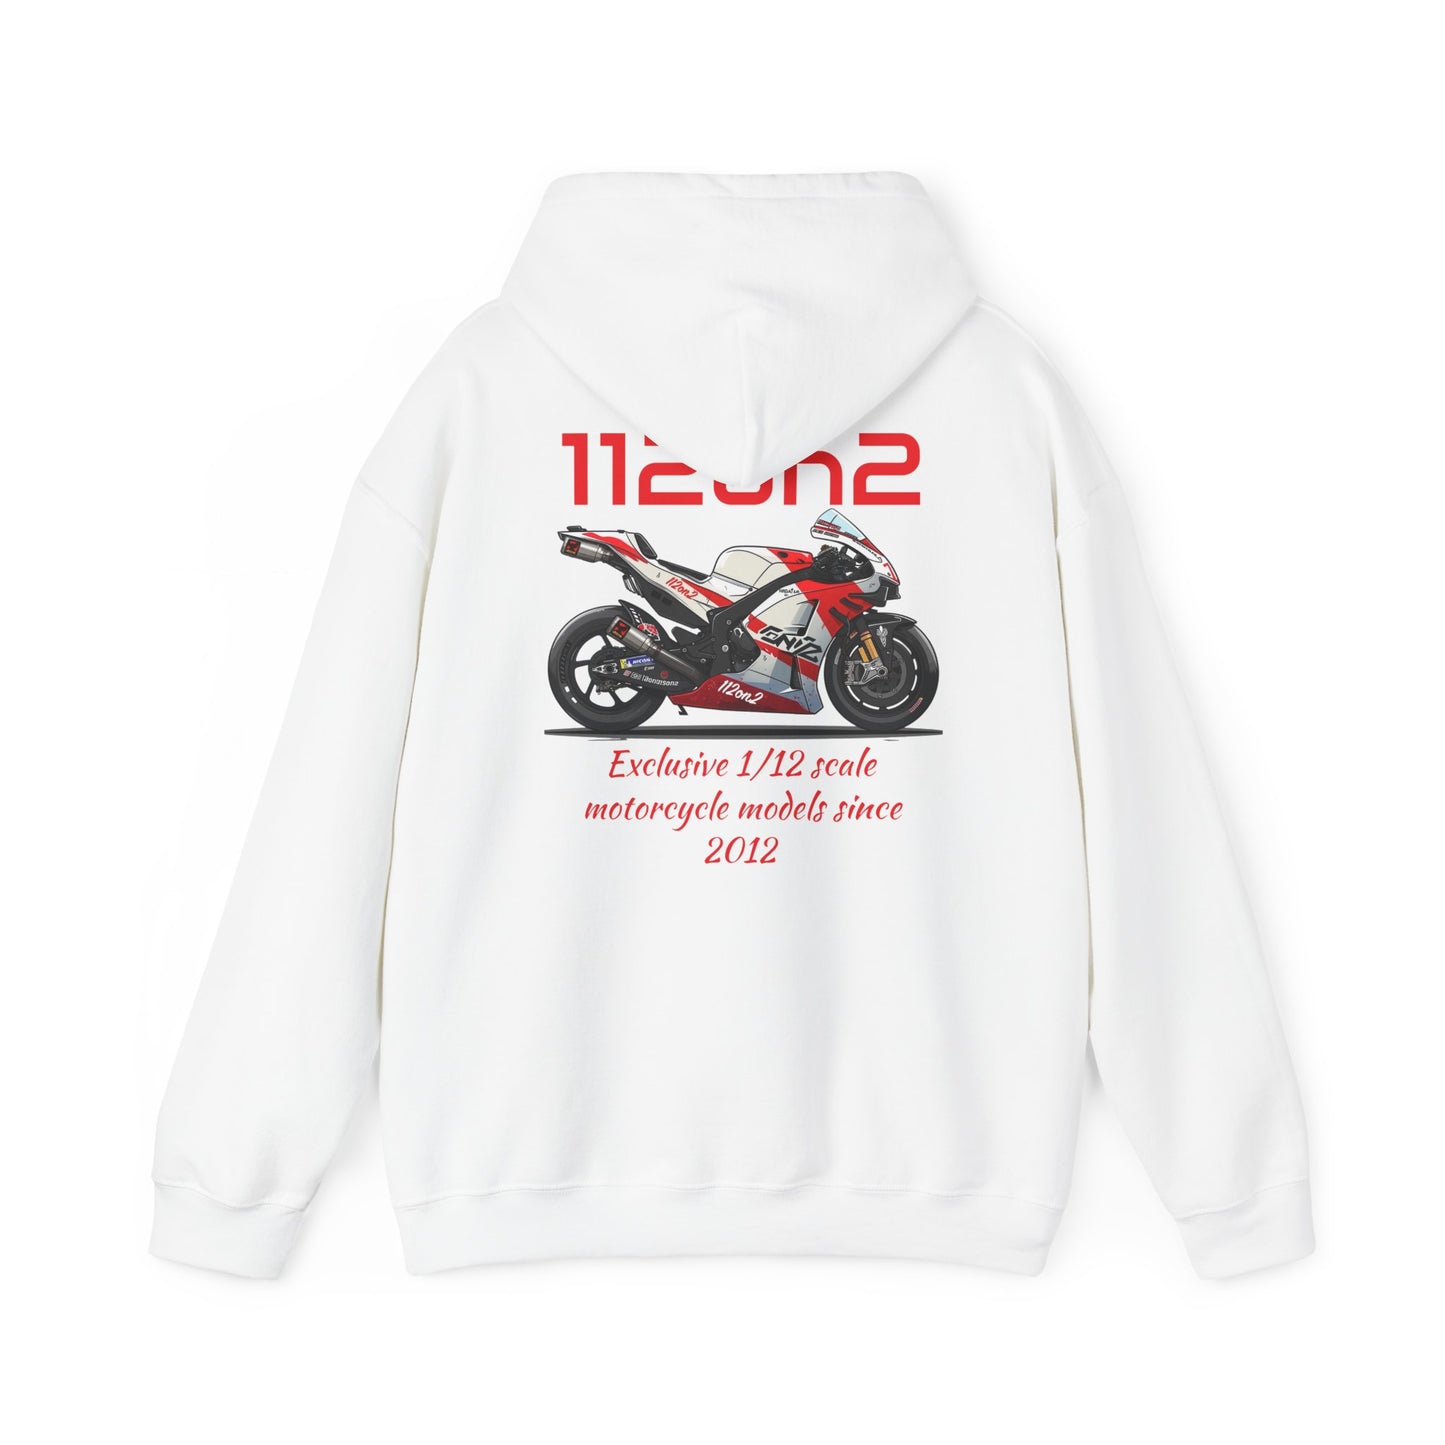 112on2 Hoodie Cartoon Racing Motorcycle Model V1